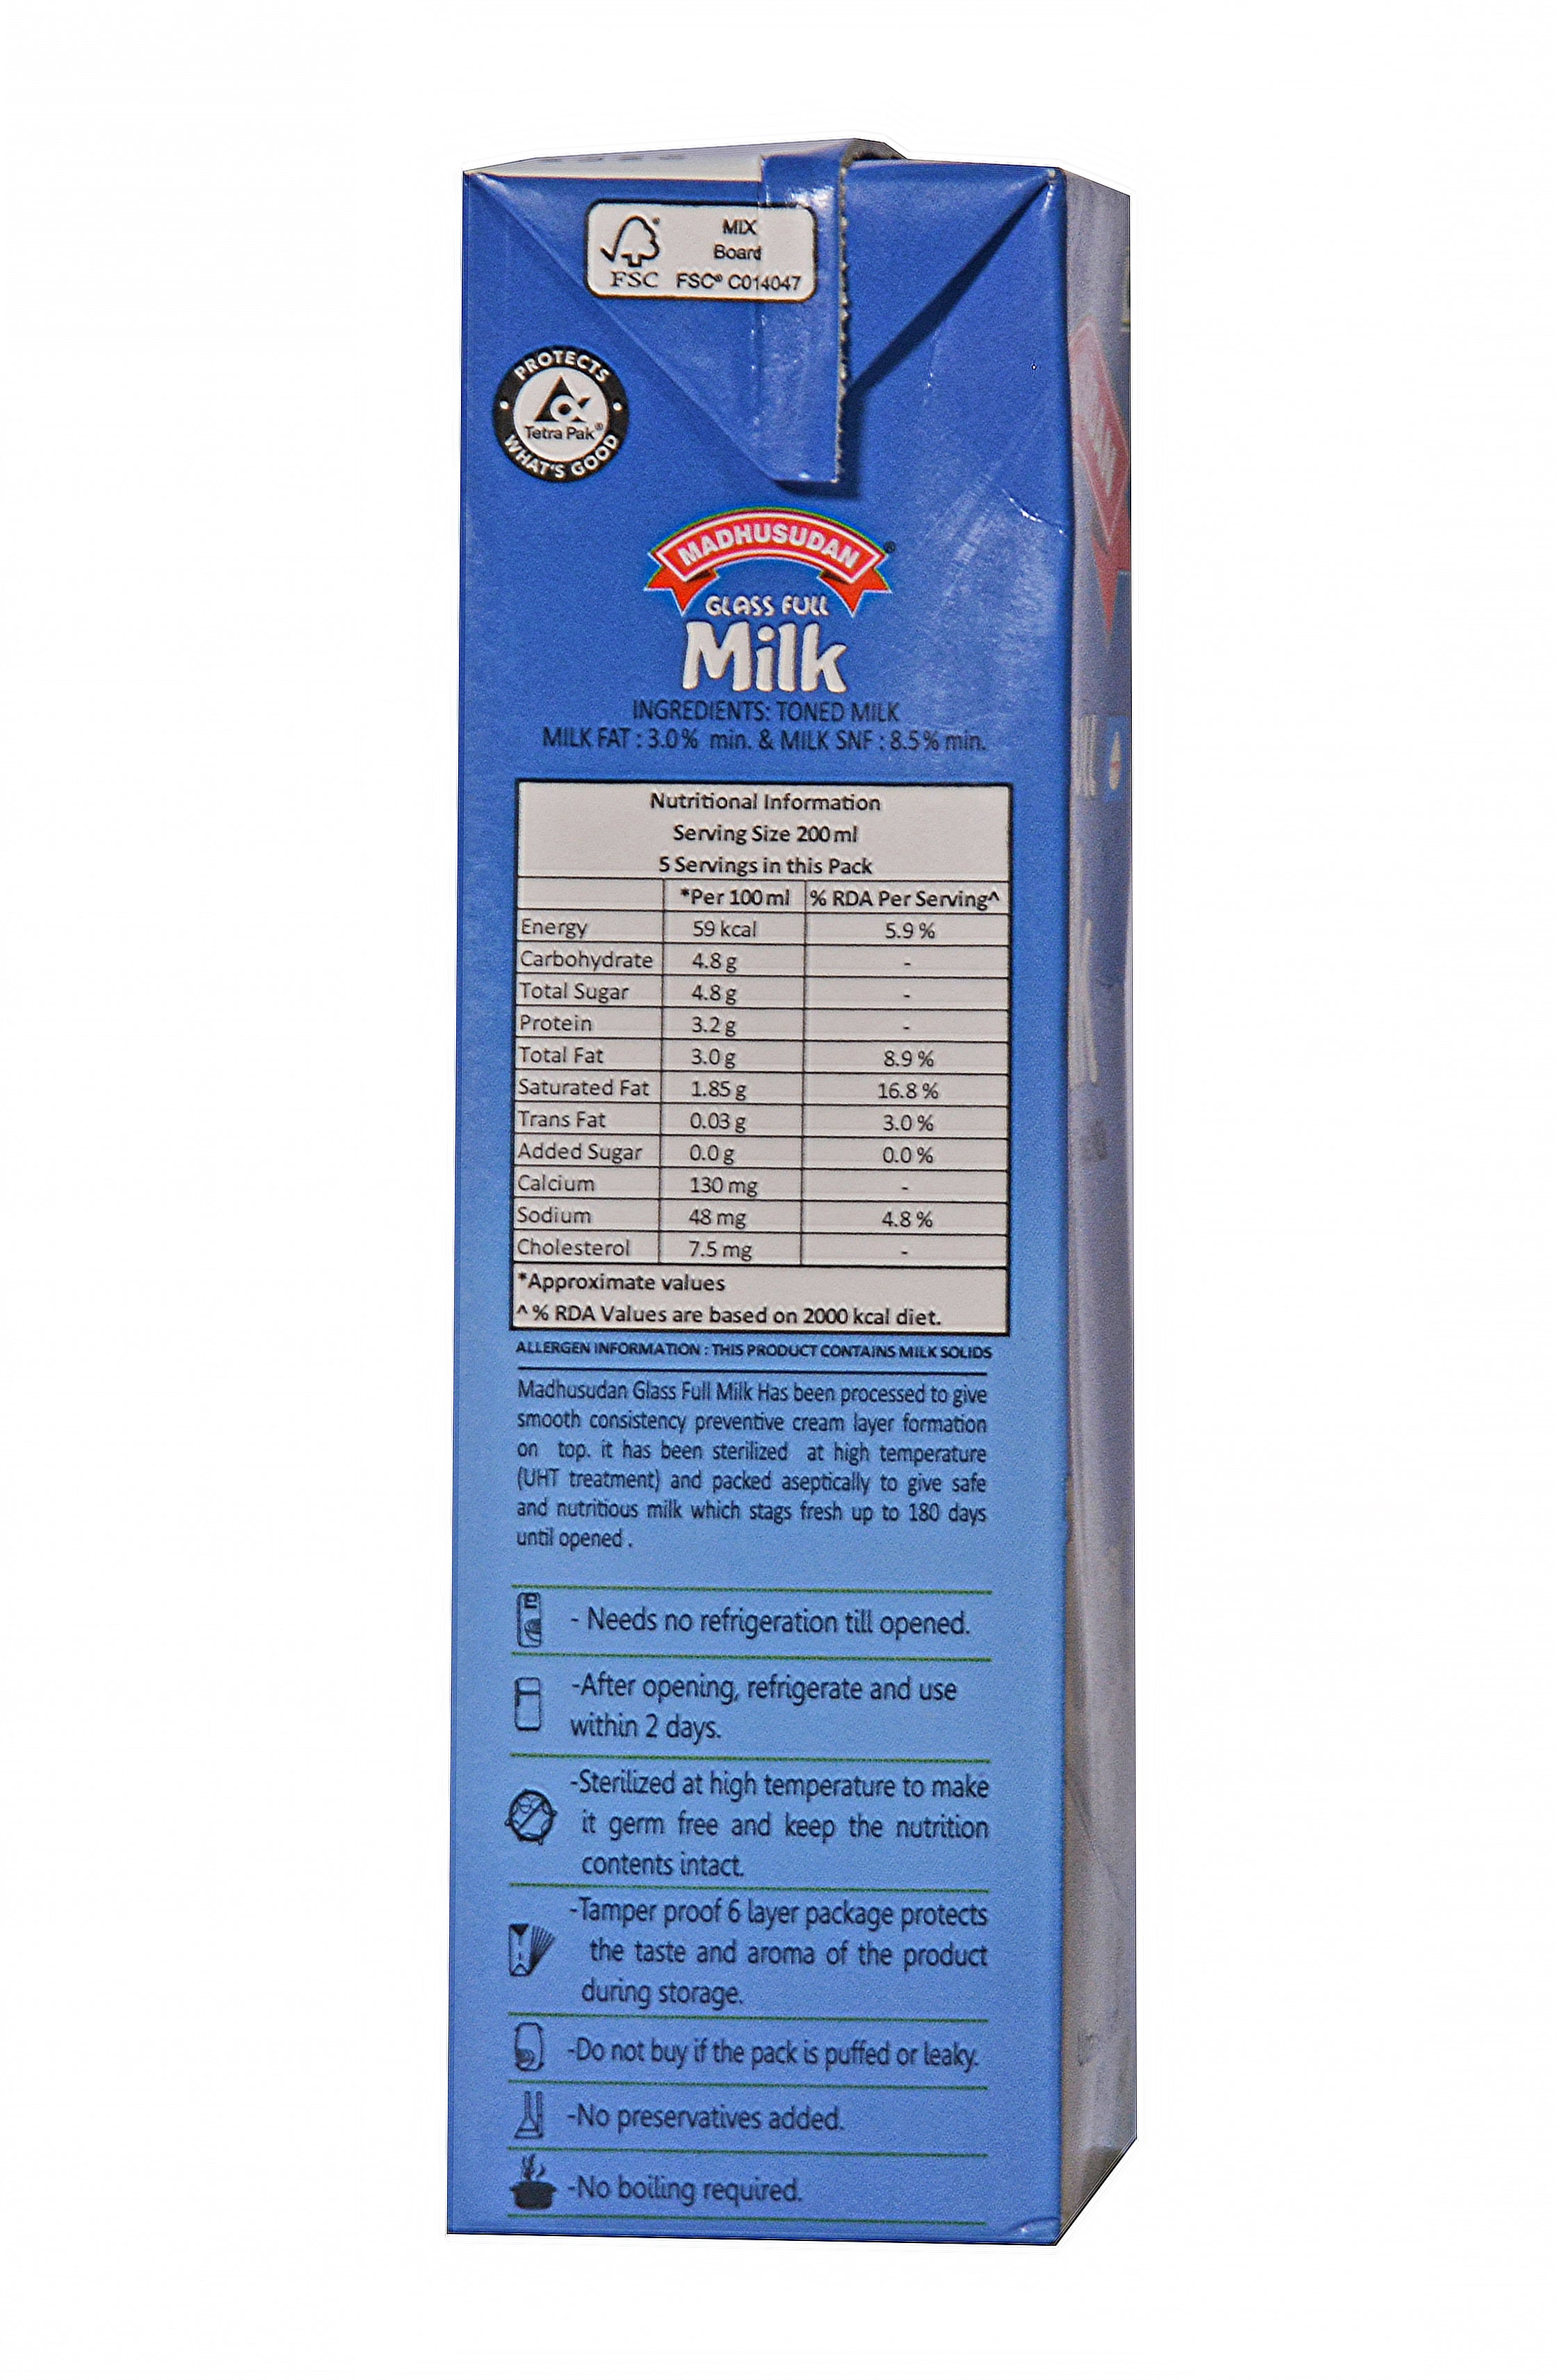 Madhusudan UHT Glass  Full  Milk 1 ltr Tetra Pack